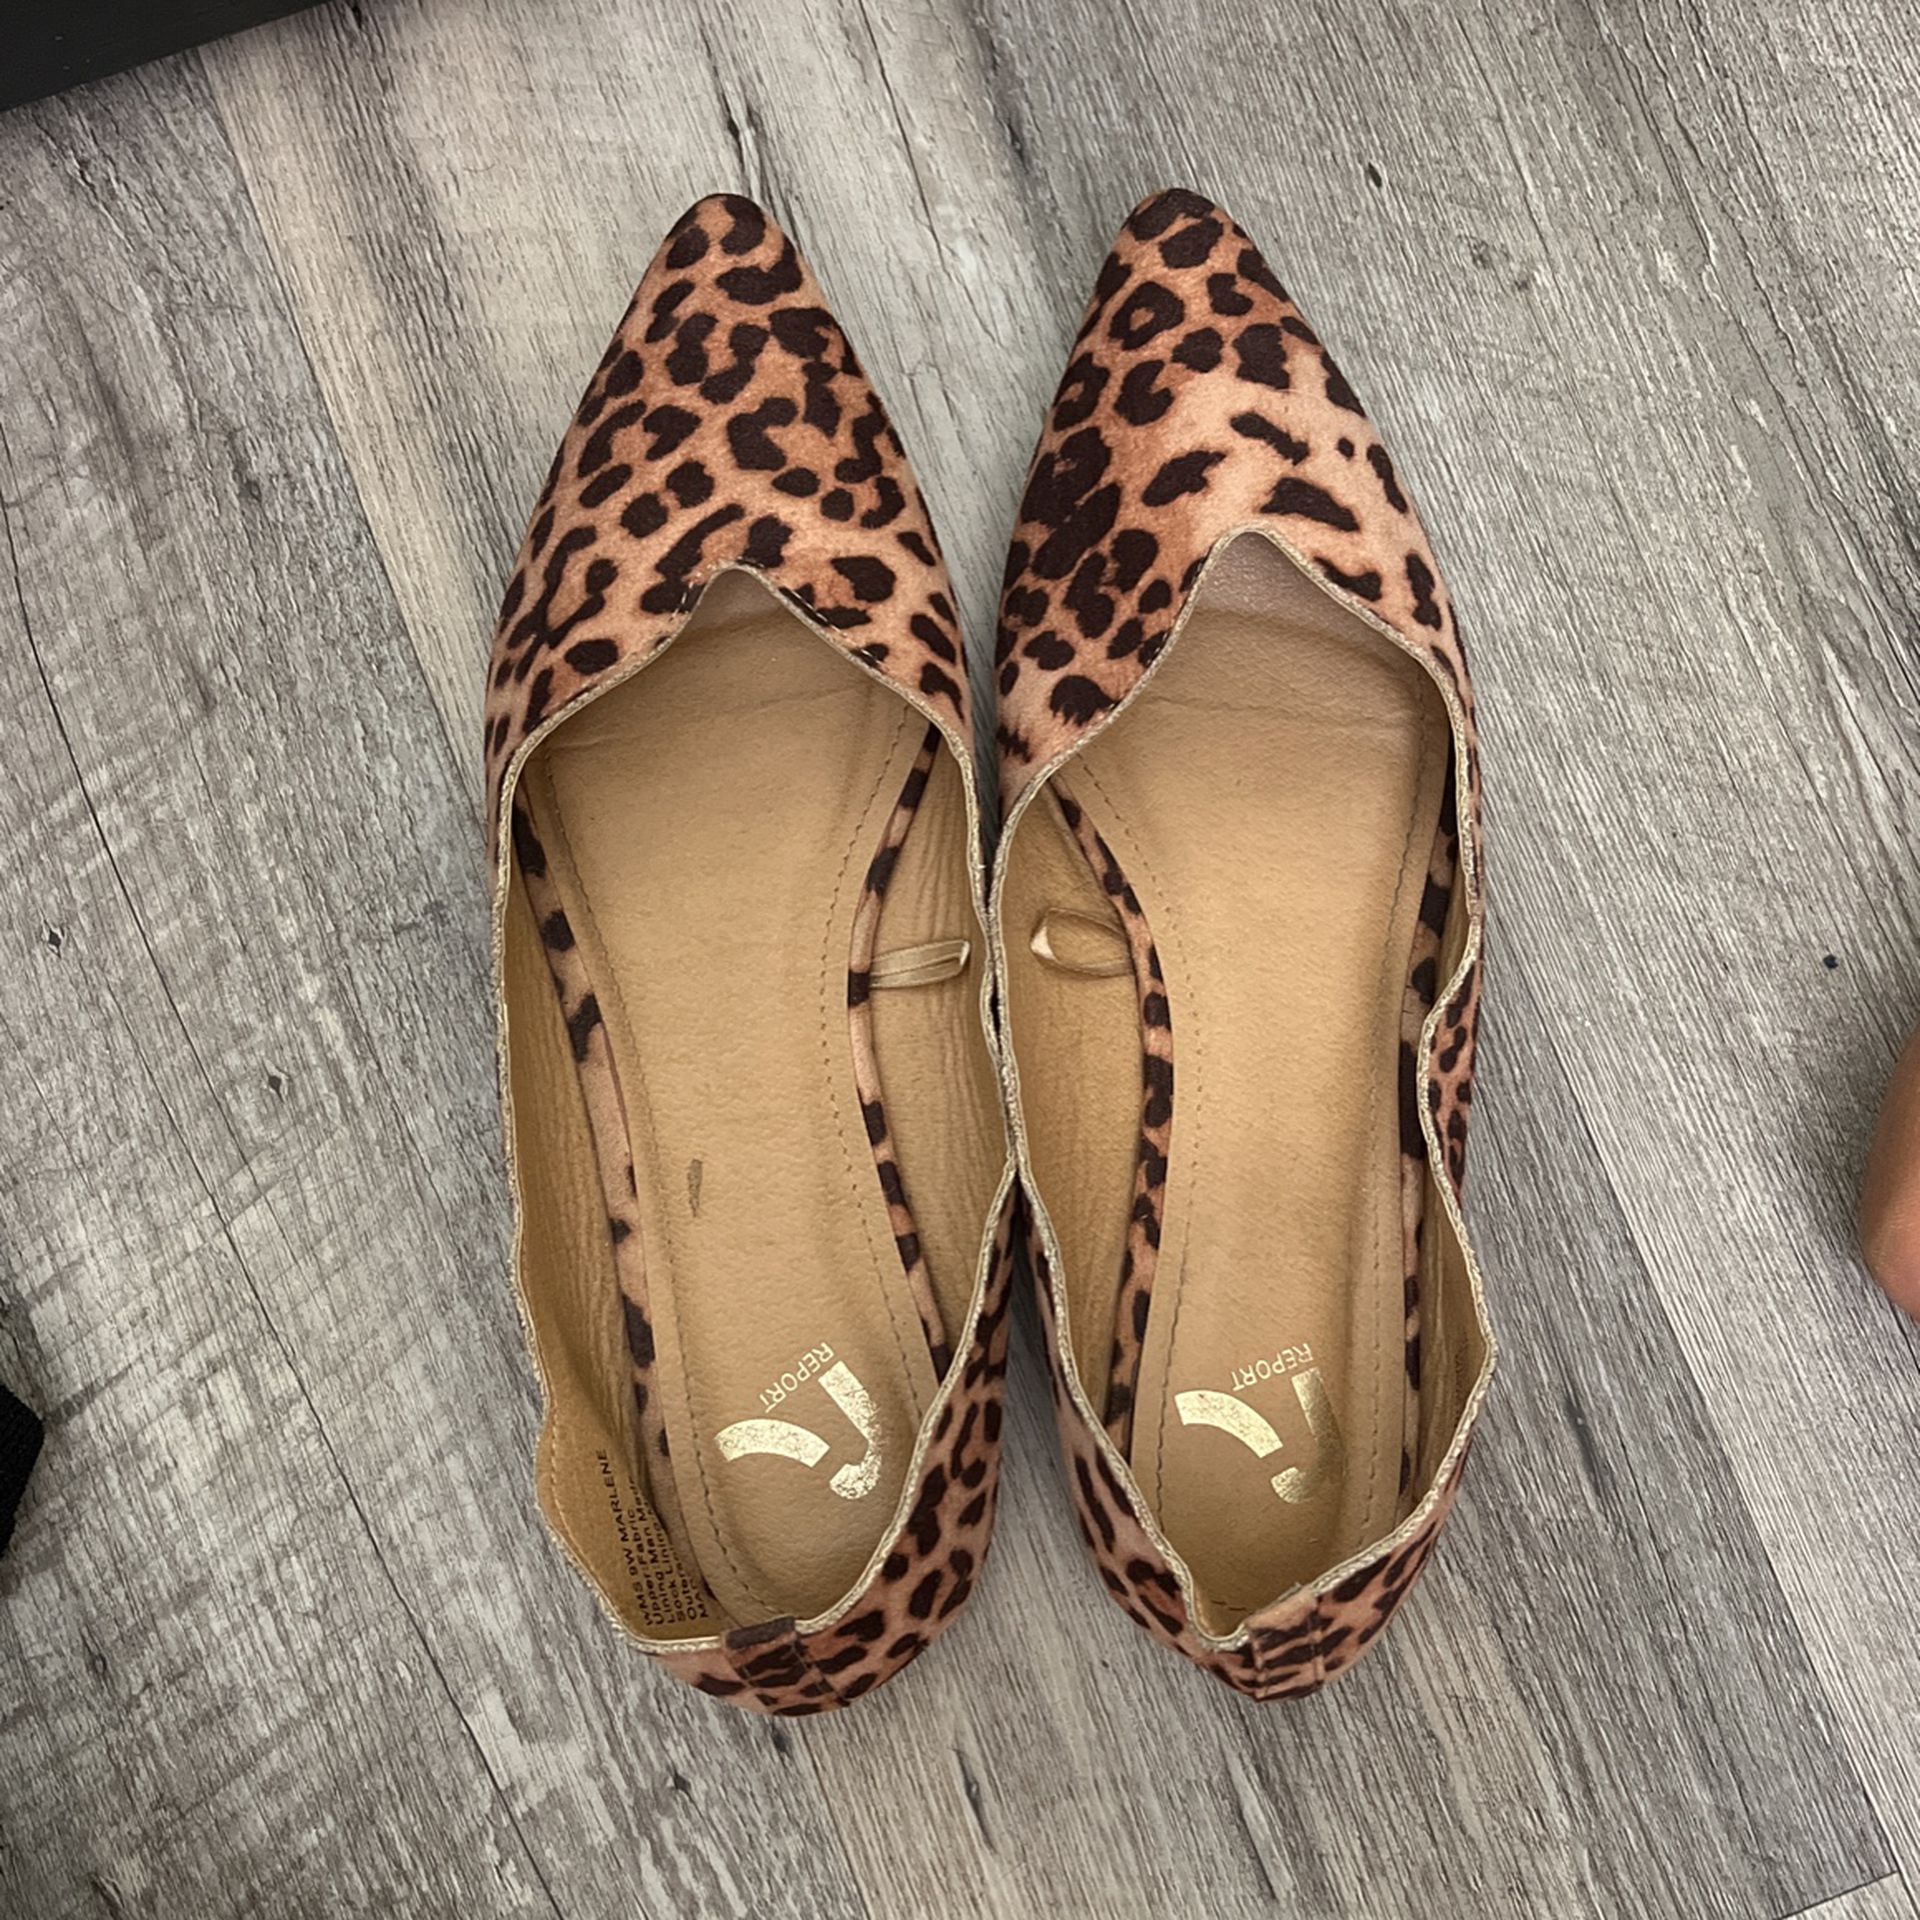 Cheetah Print Flats/Dolly Shoes 